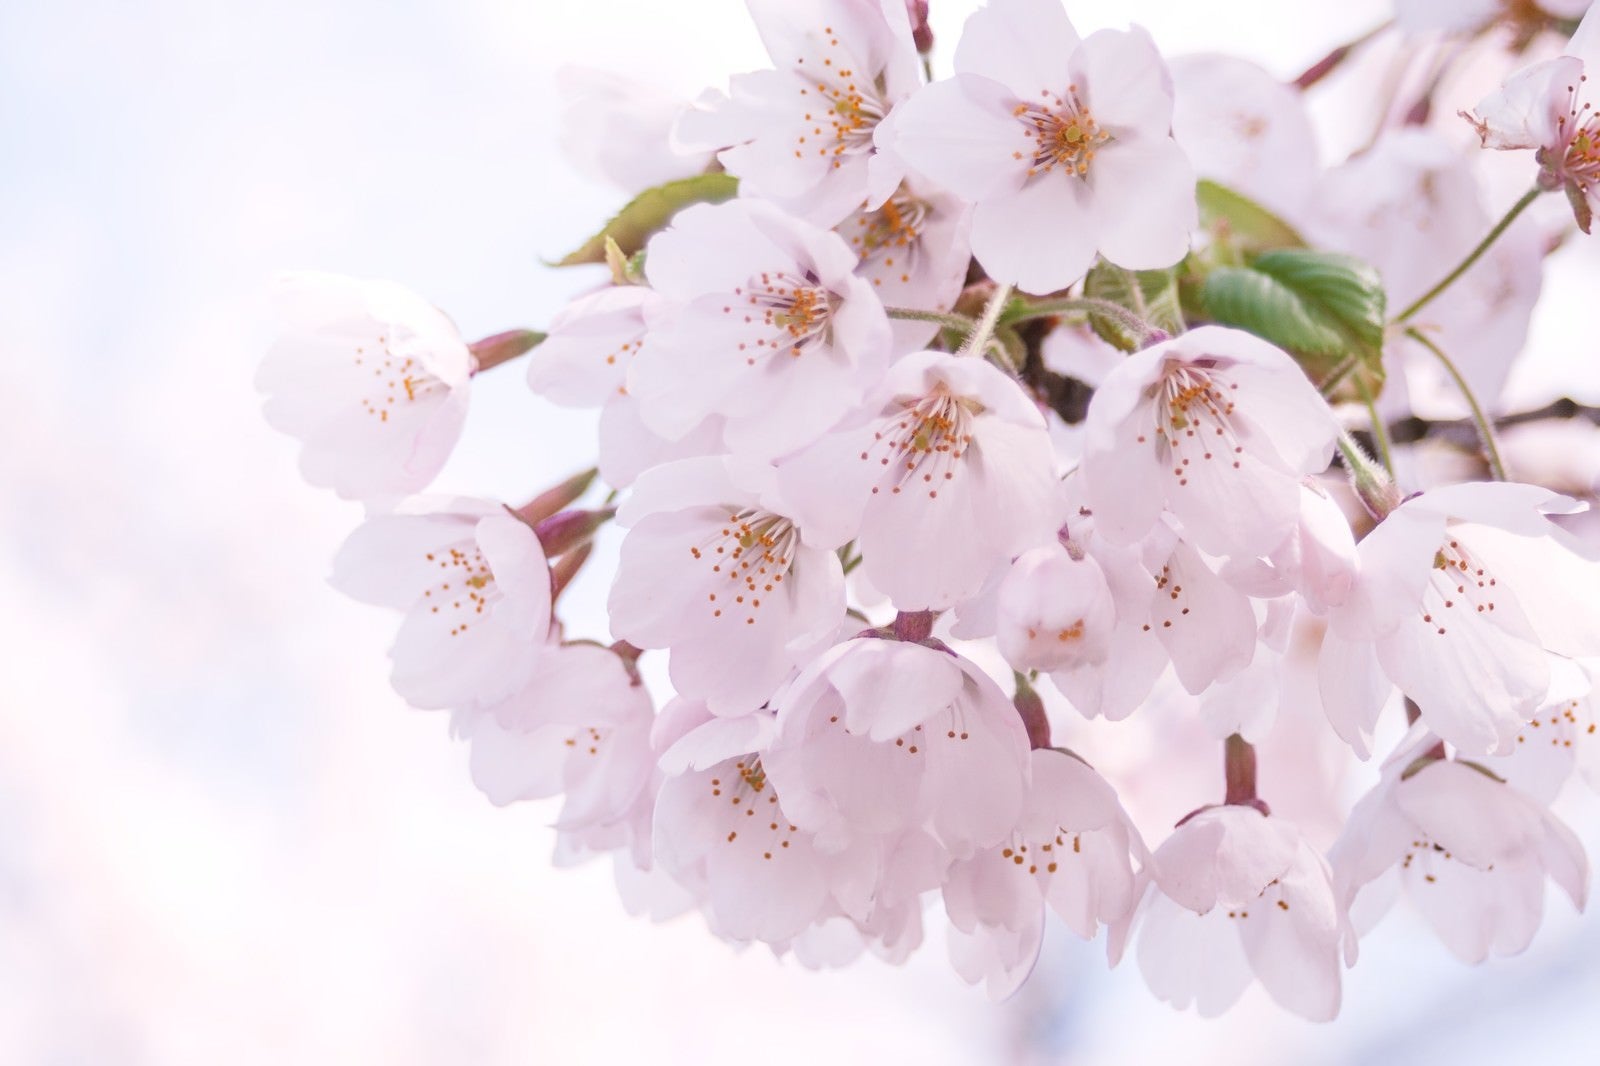 「光が差し込むピンクの桜」の写真